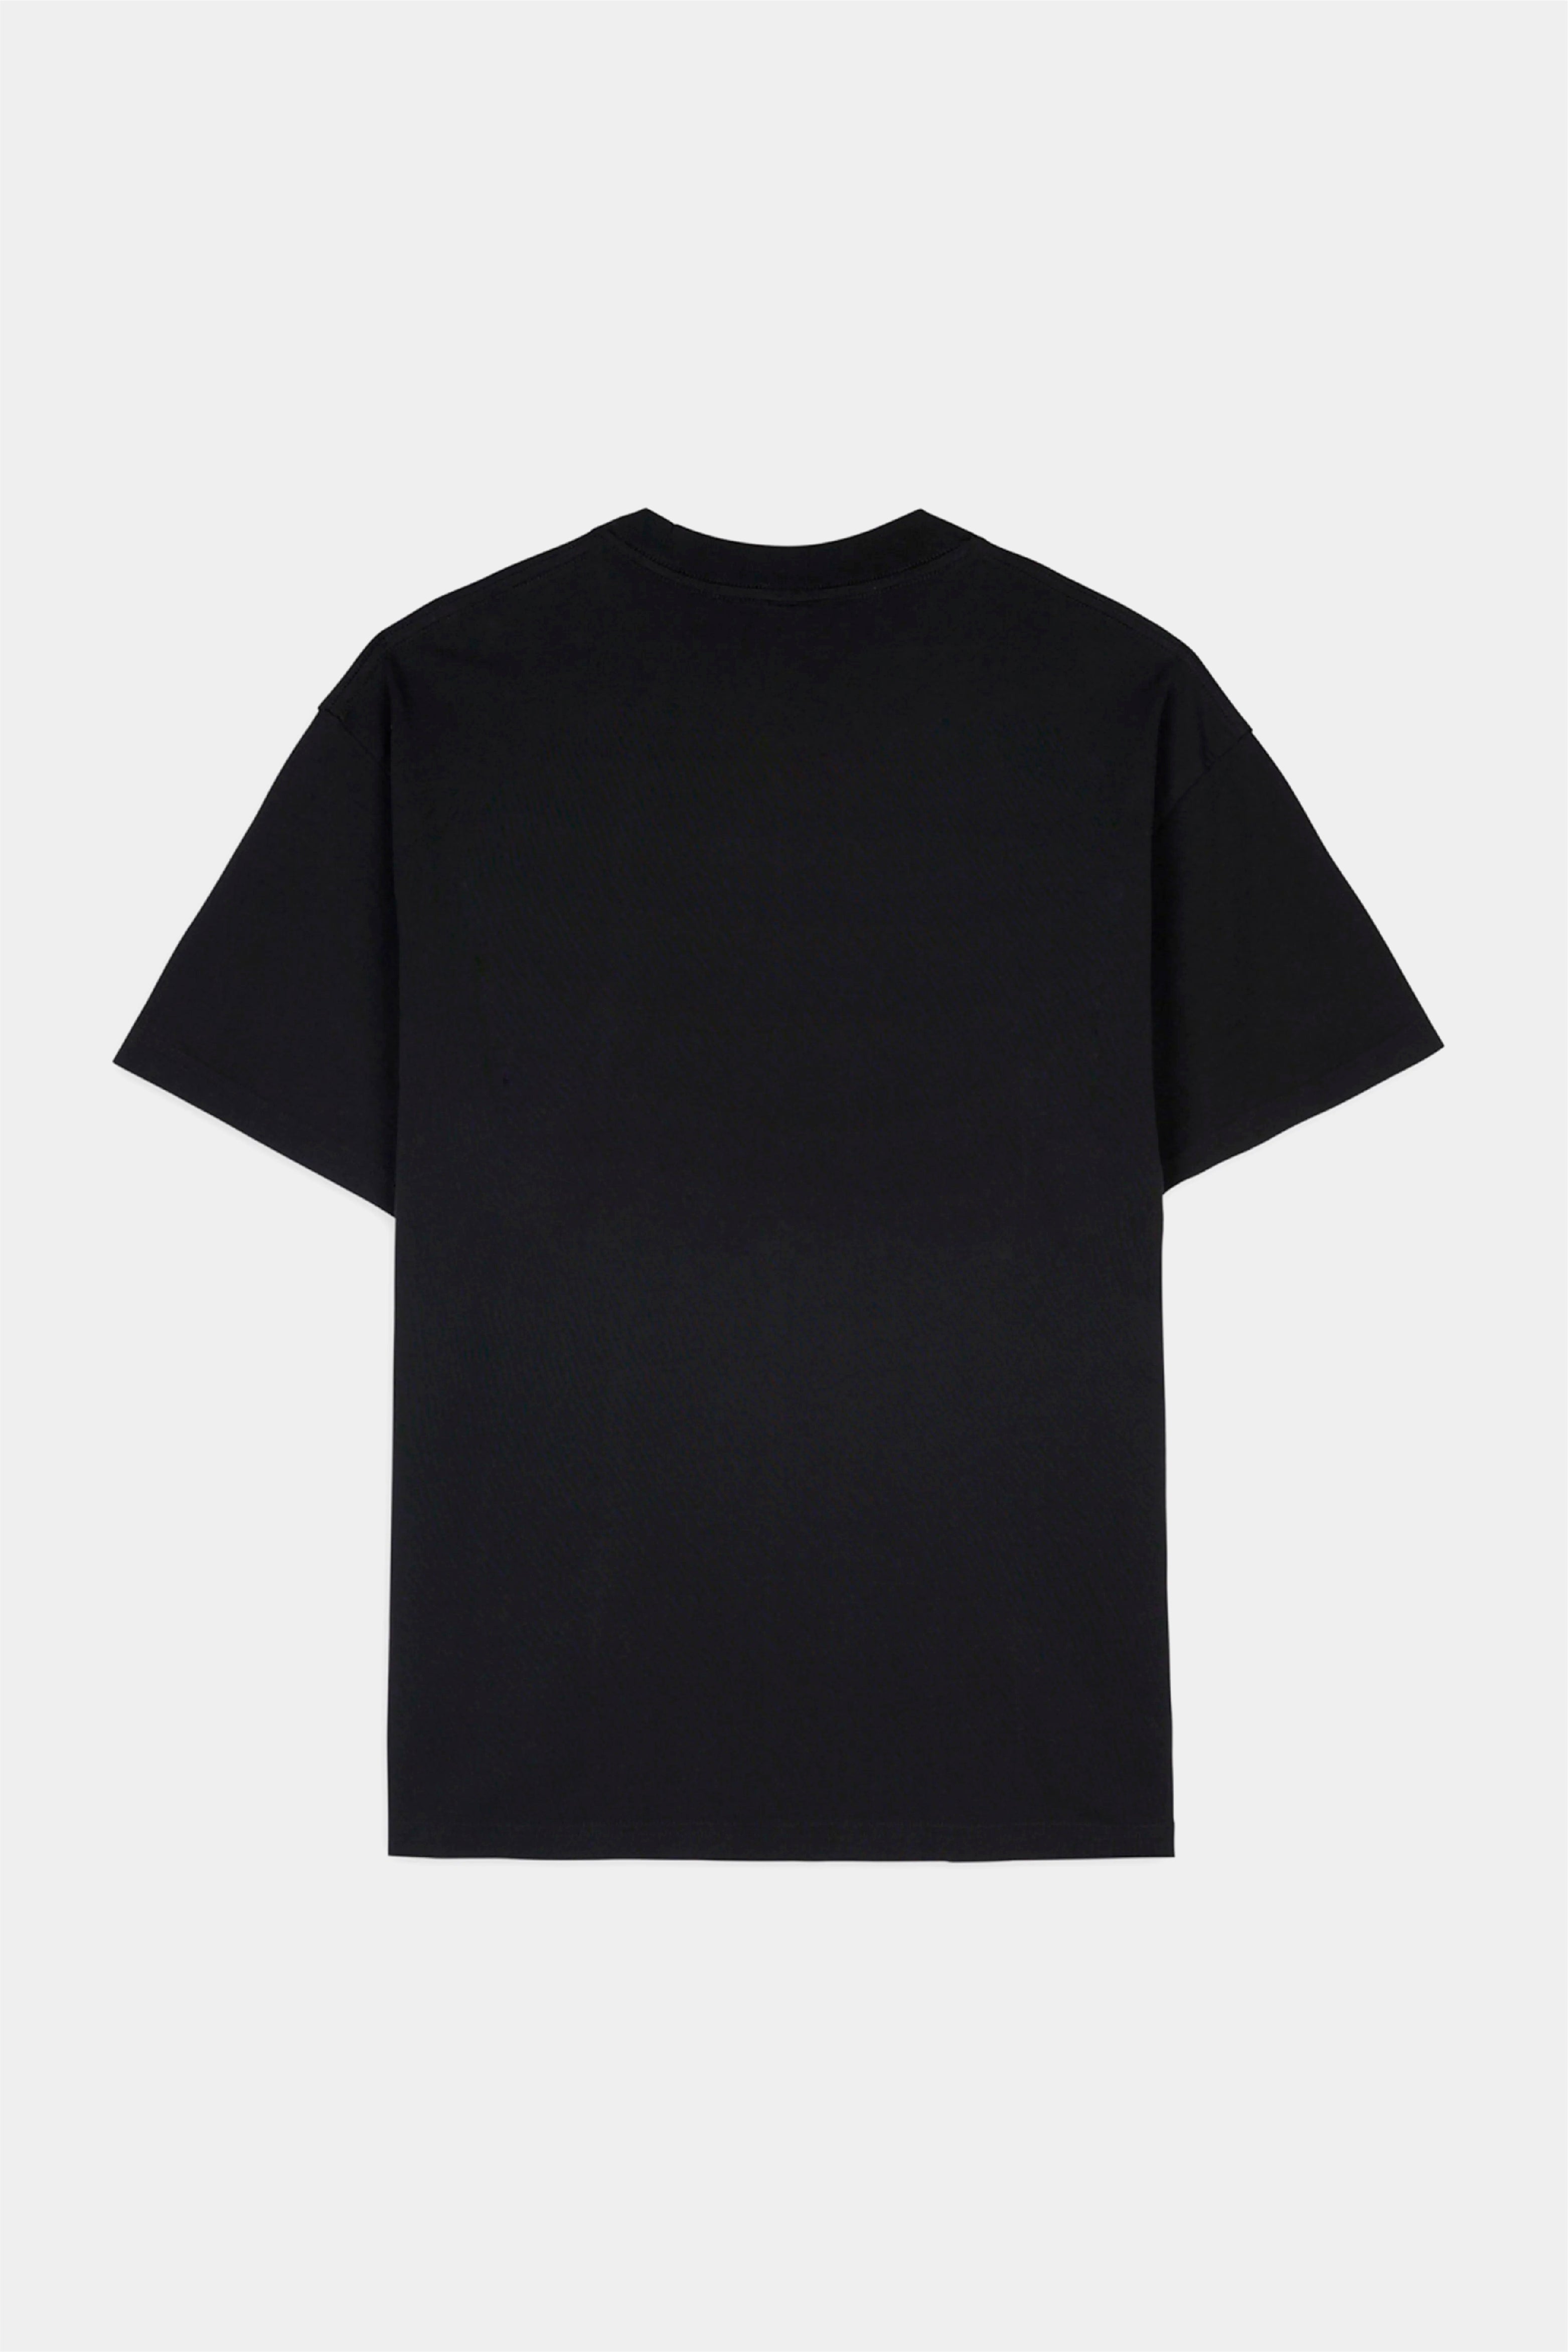 Selectshop FRAME - BRAIN DEAD Teddy T-Shirt T-Shirts Dubai